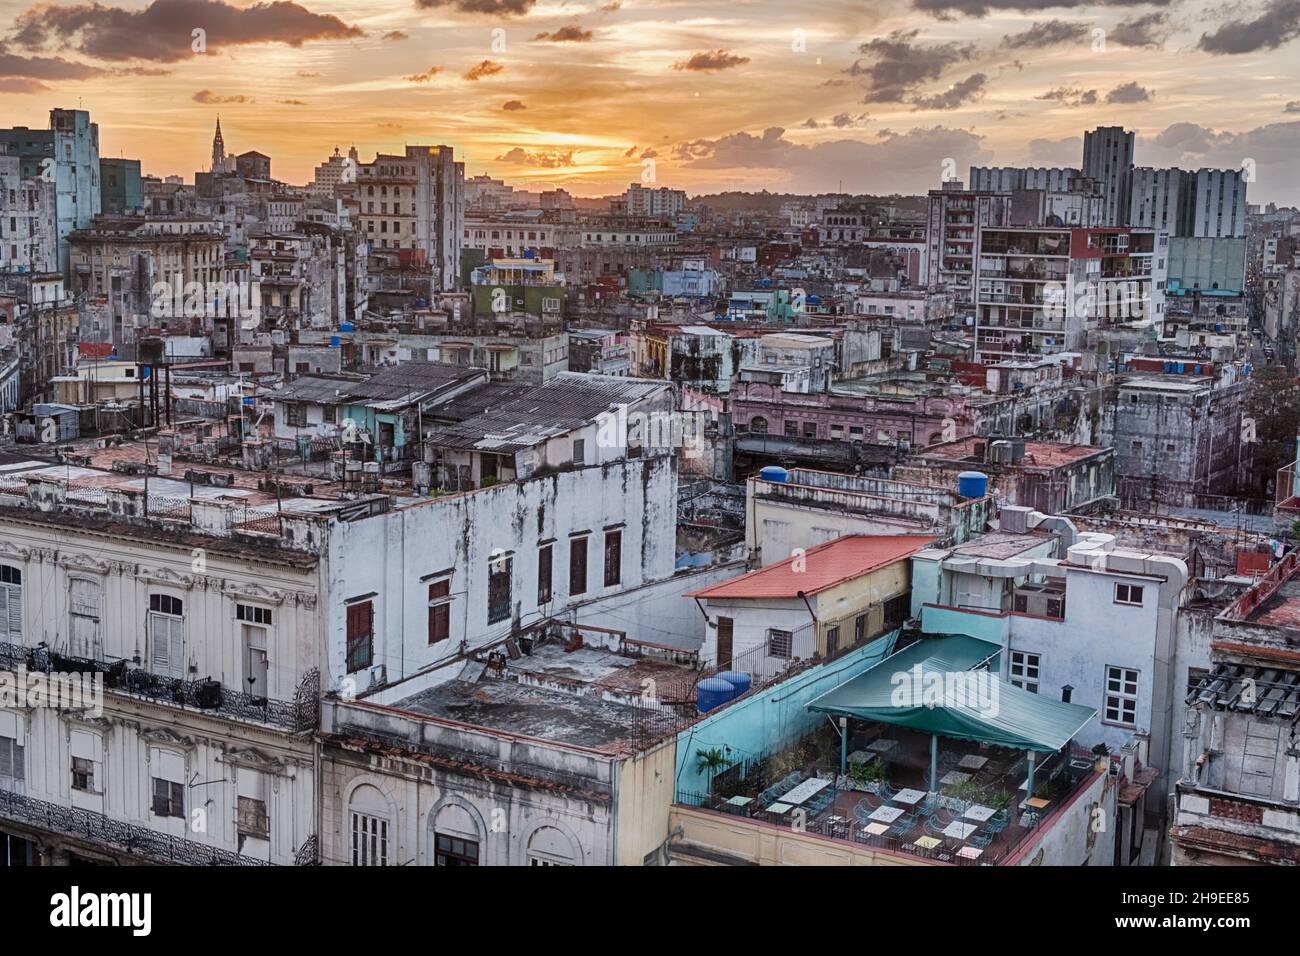 Vue sur le quartier Vedado de la Havane, Cuba est colorée par un coucher de soleil orange au loin. Banque D'Images